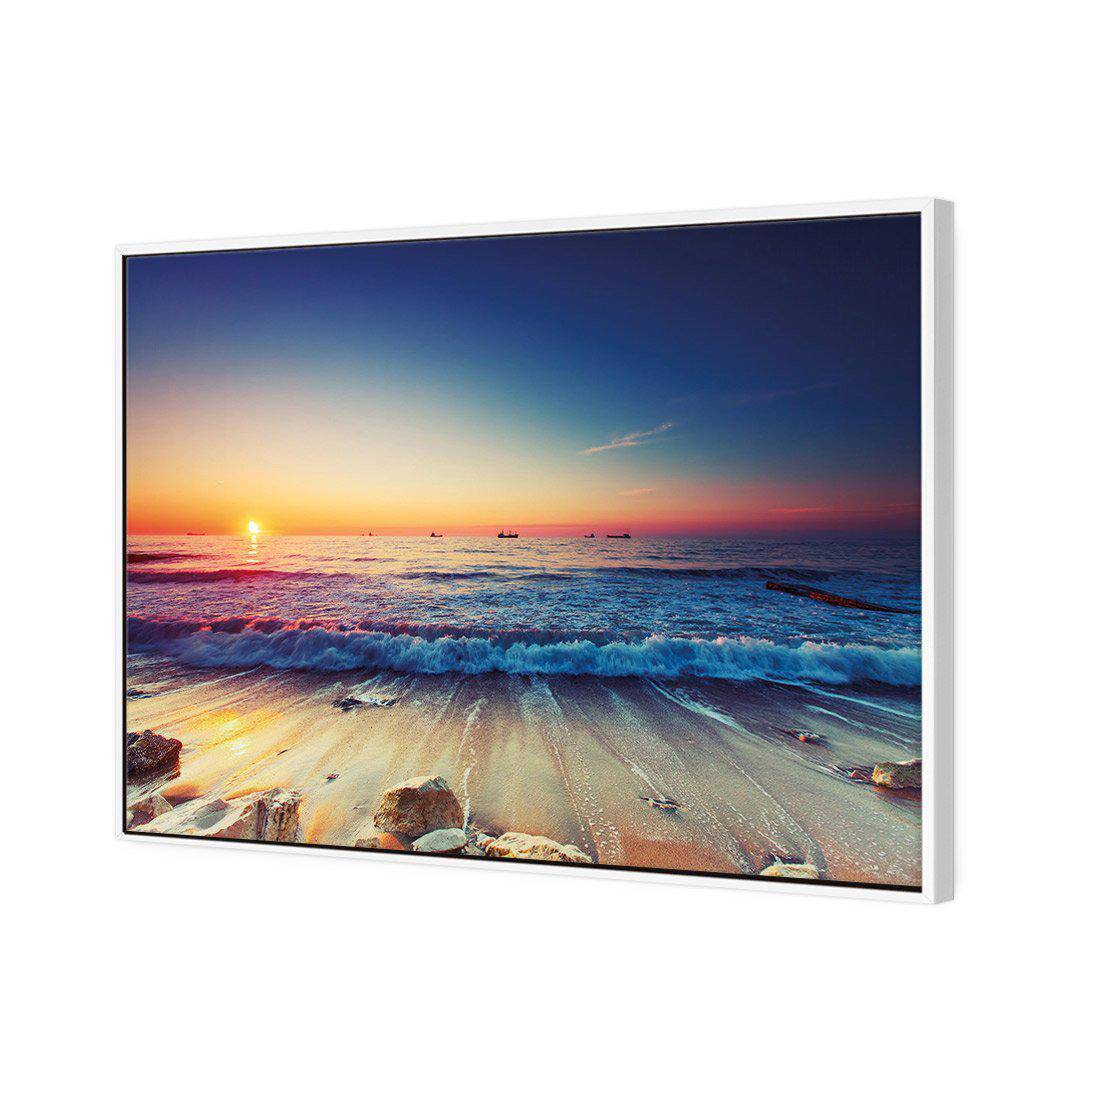 High Tide Sunset Canvas Art-Canvas-Wall Art Designs-45x30cm-Canvas - White Frame-Wall Art Designs